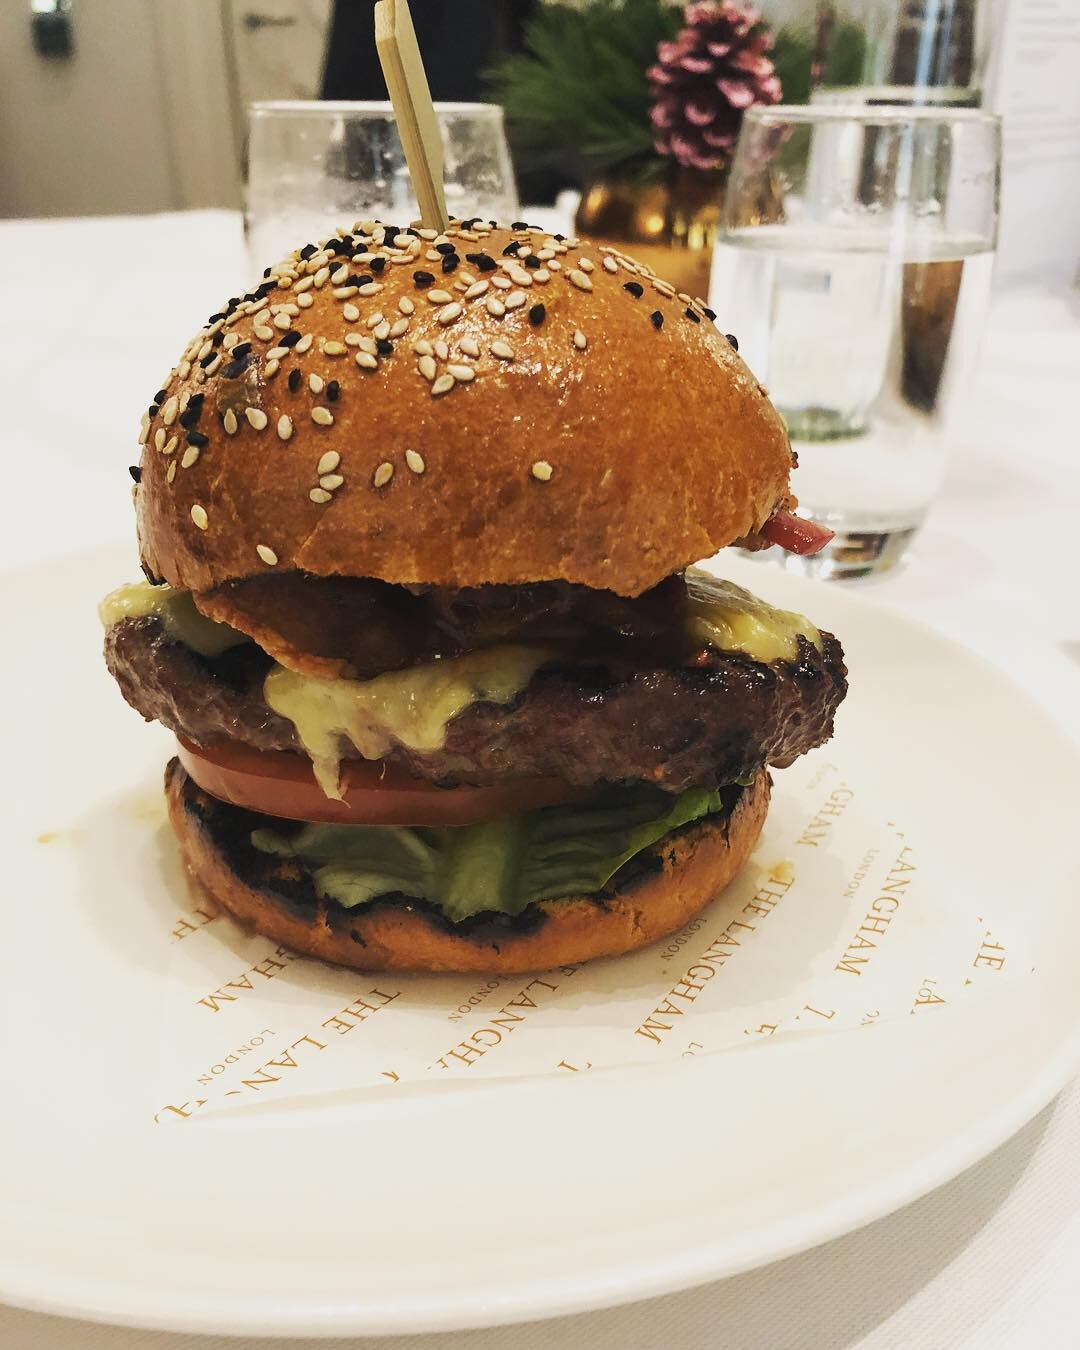 Enjoyed this amazing burger at @langham_london 🎺🎙🙌🏼